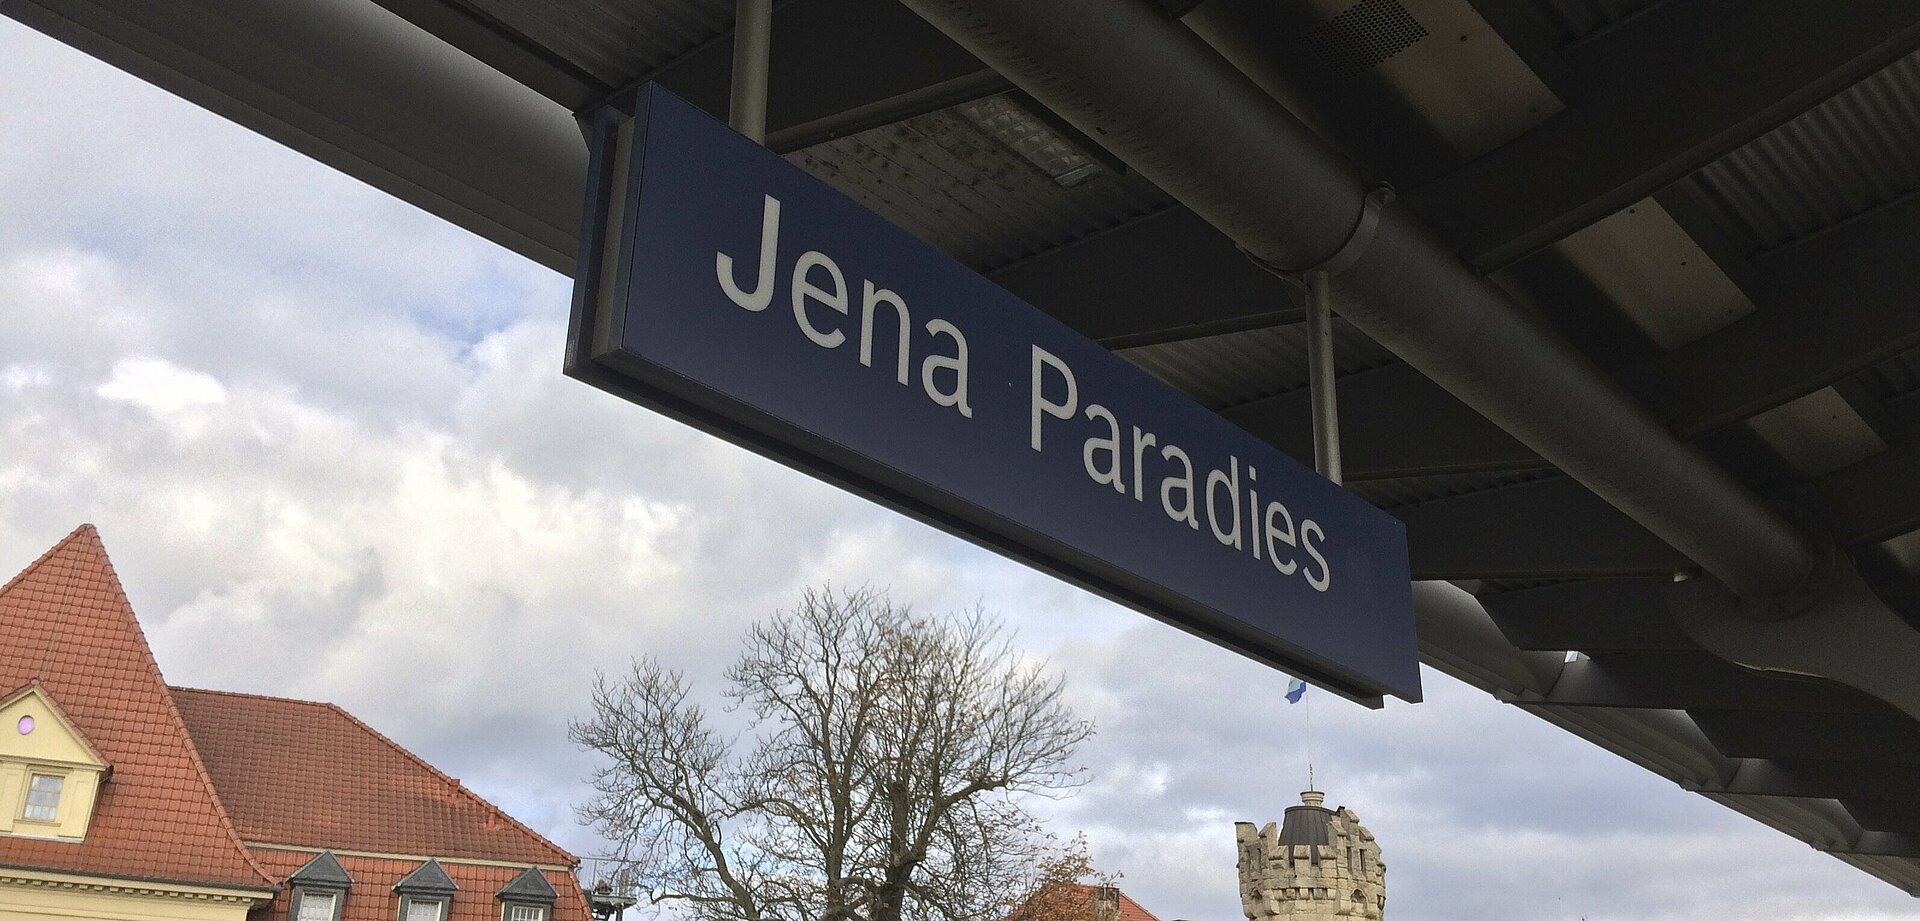 Schild "Jena Paradies"